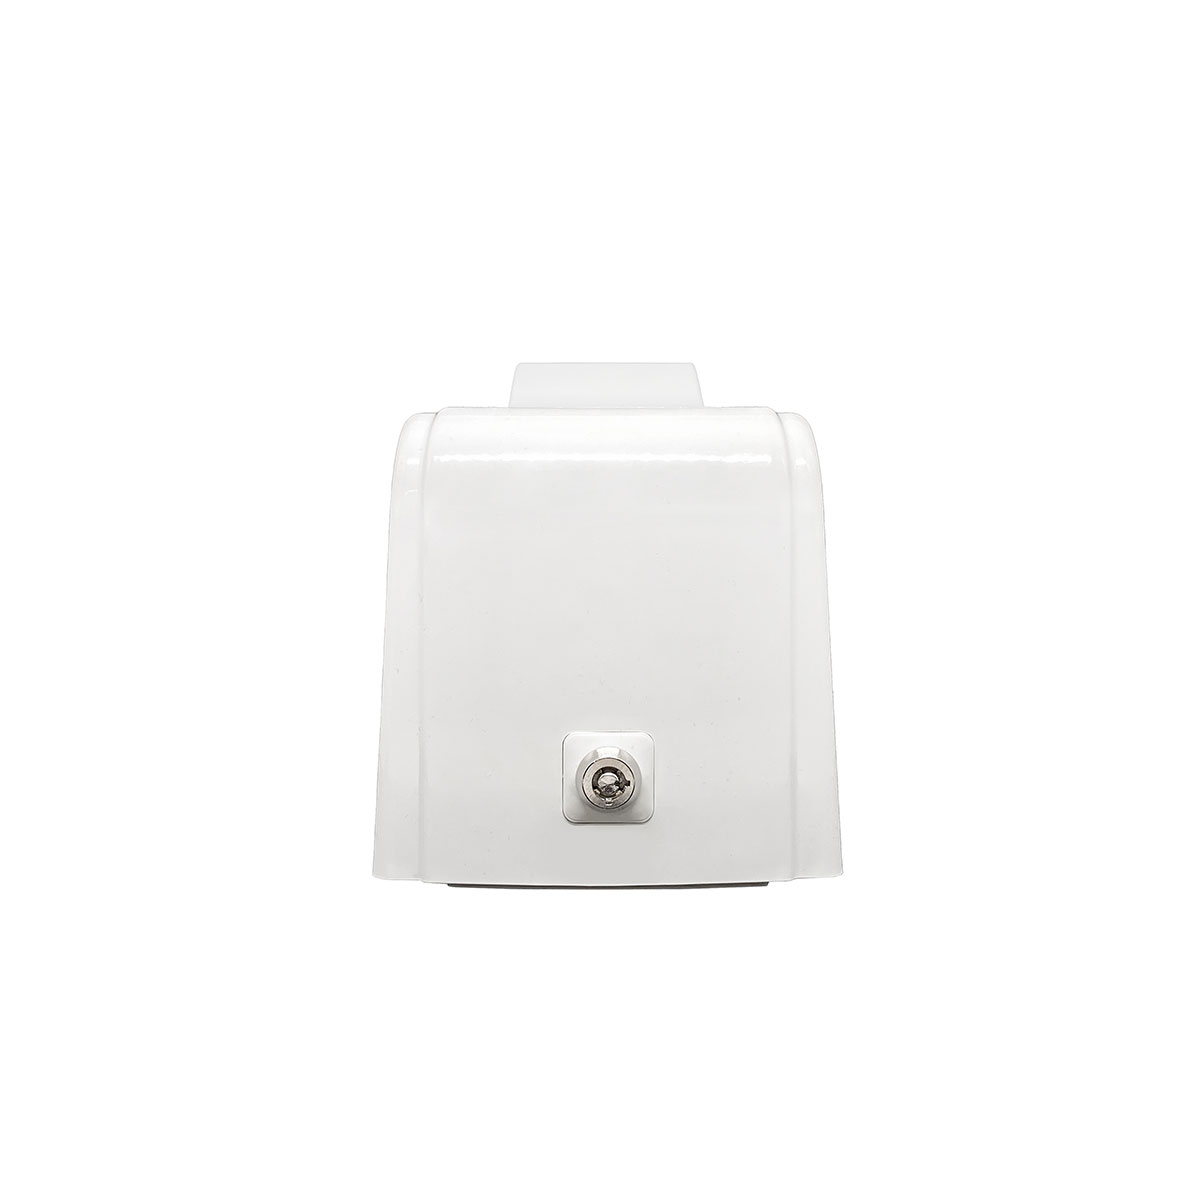 Дозатор для жидкого мыла X12 нажимной 1,2 л БИЗНЕС, корпус белый, стекла и кнопка прозрачные фото 3